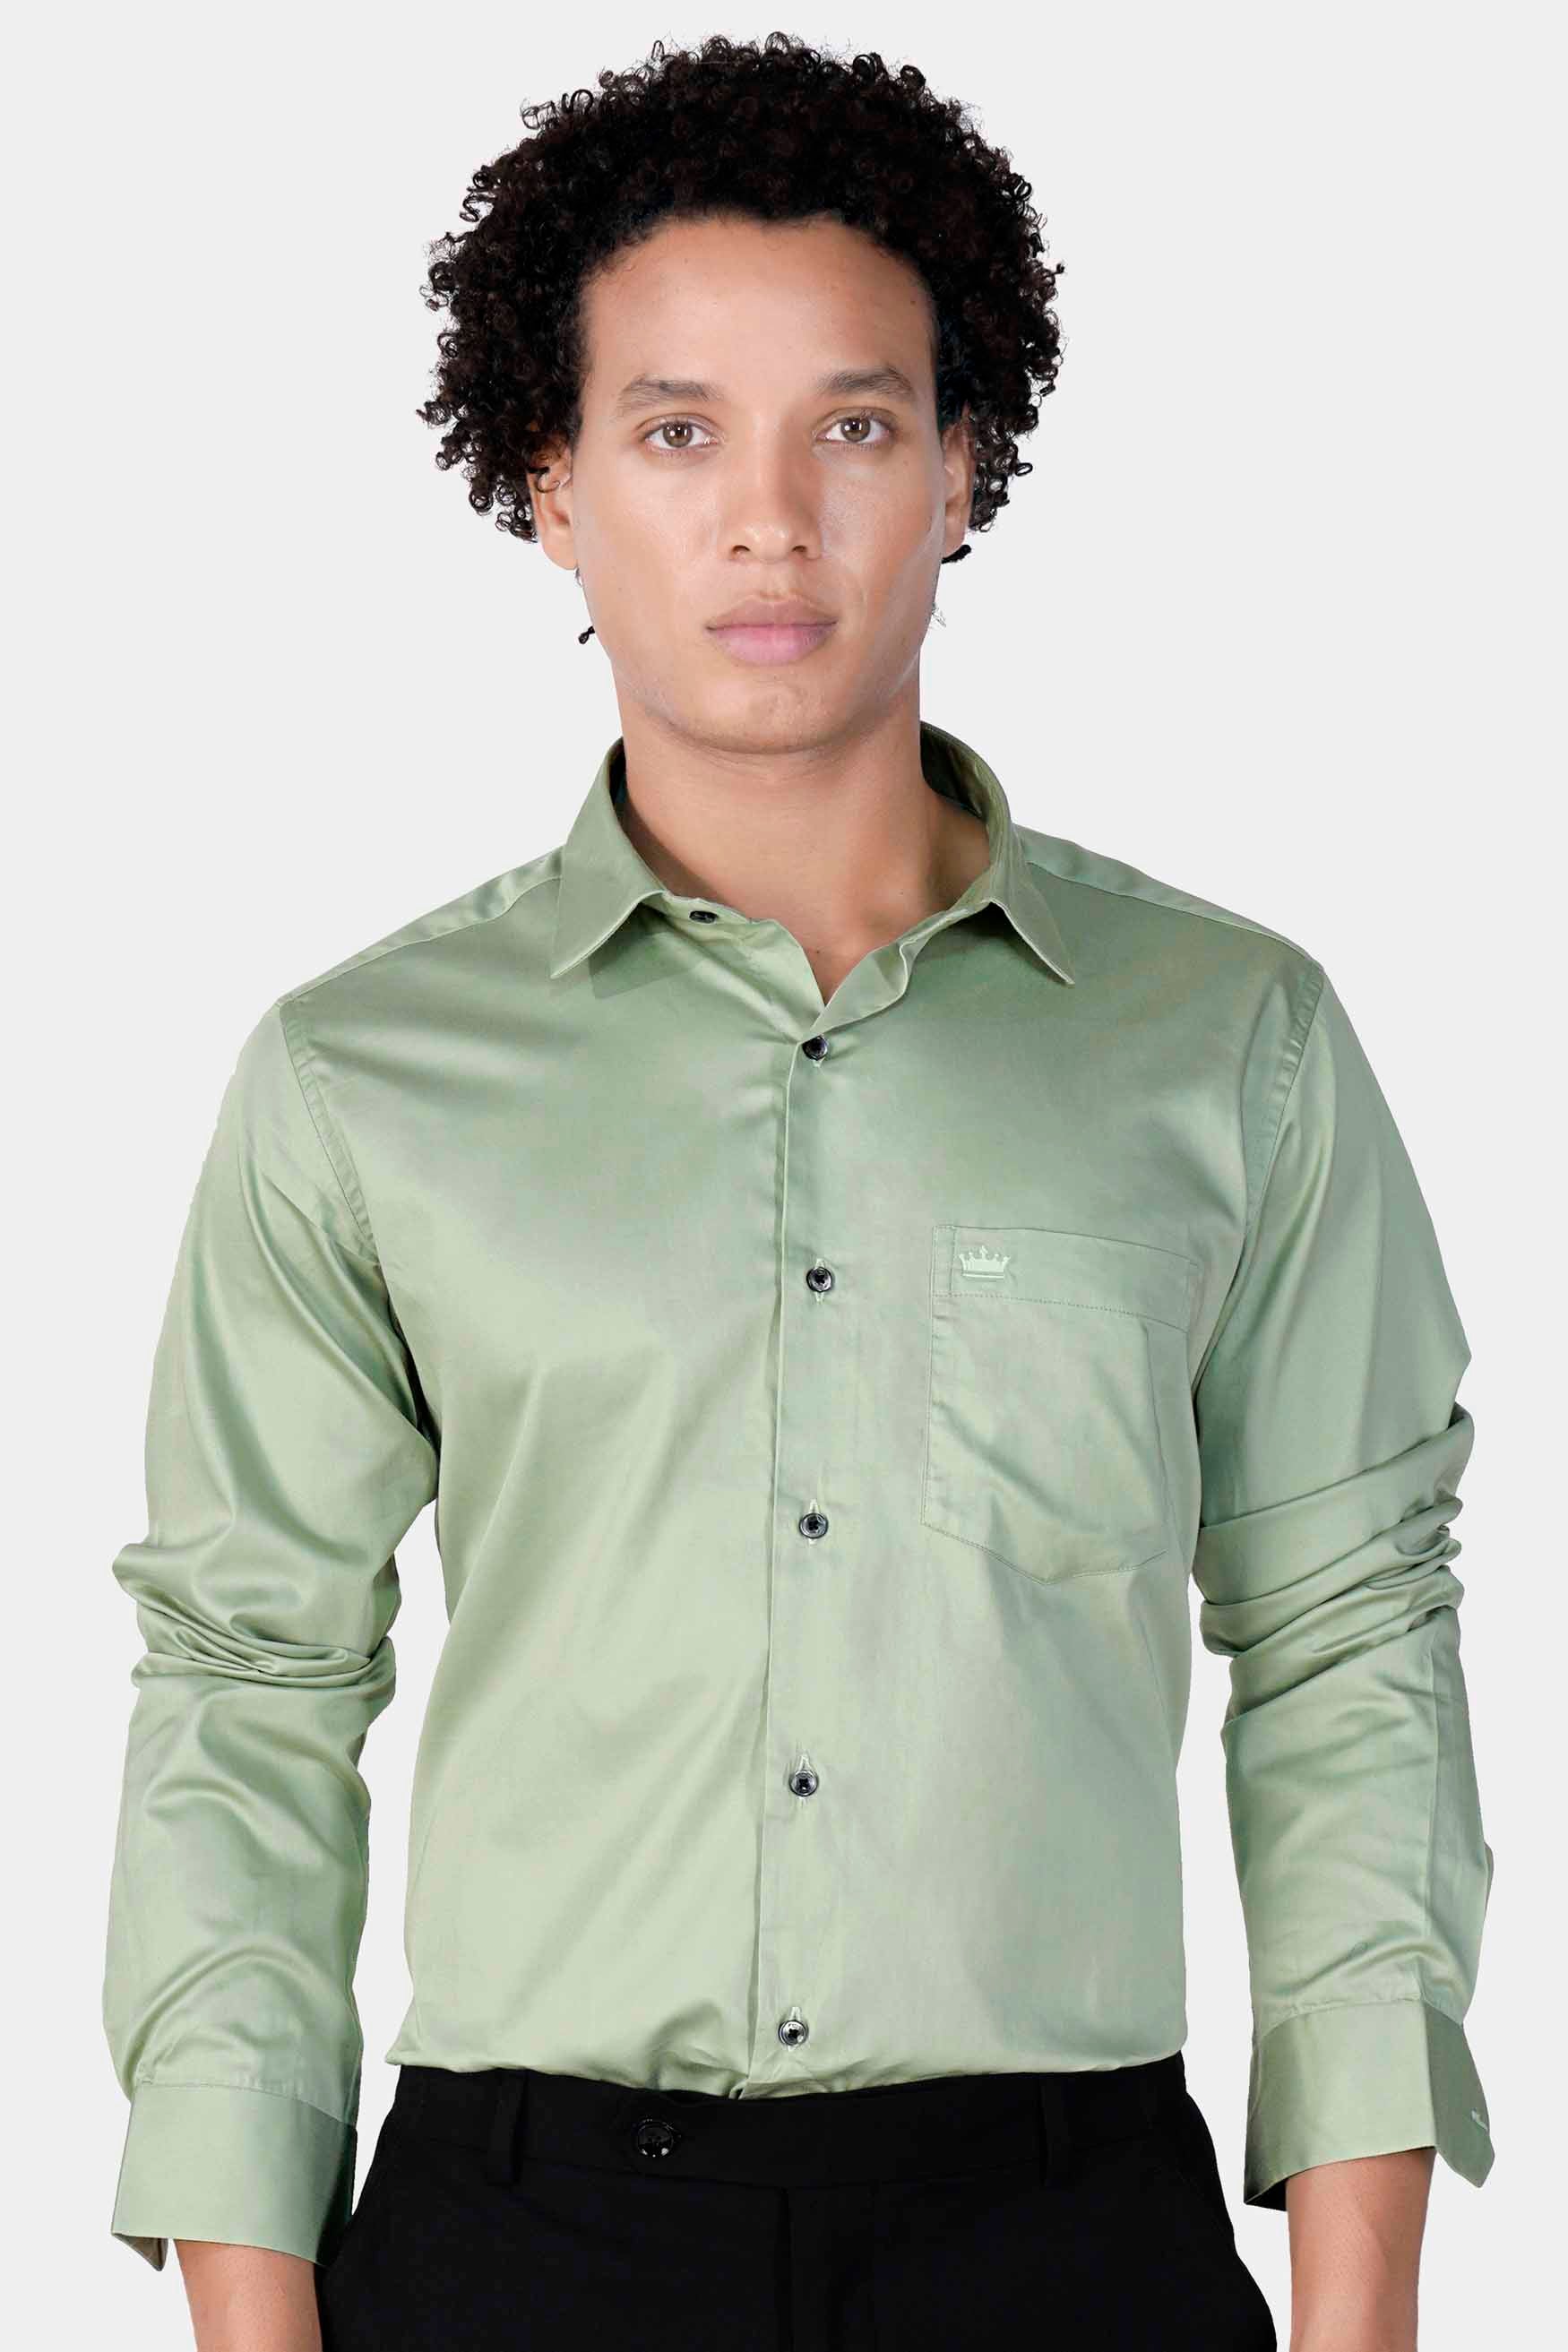 Laurel Green Subtle Sheen Super Soft Premium Cotton Shirt